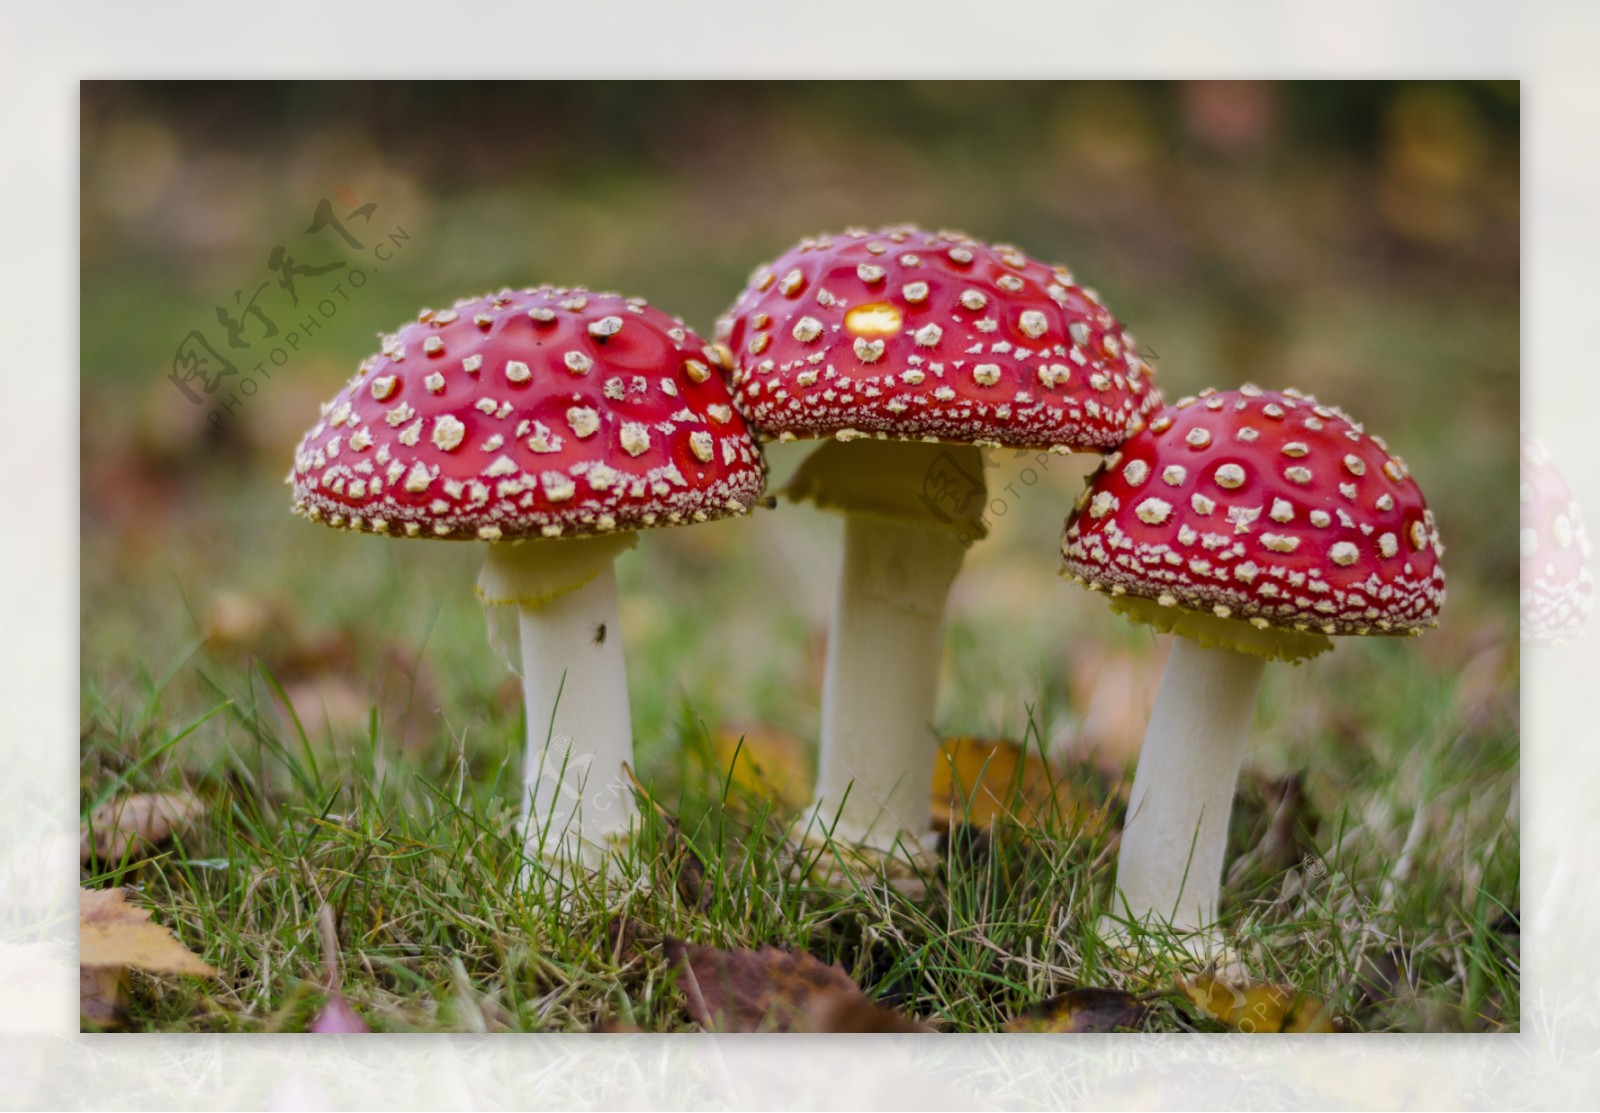 红色毒蘑菇图片